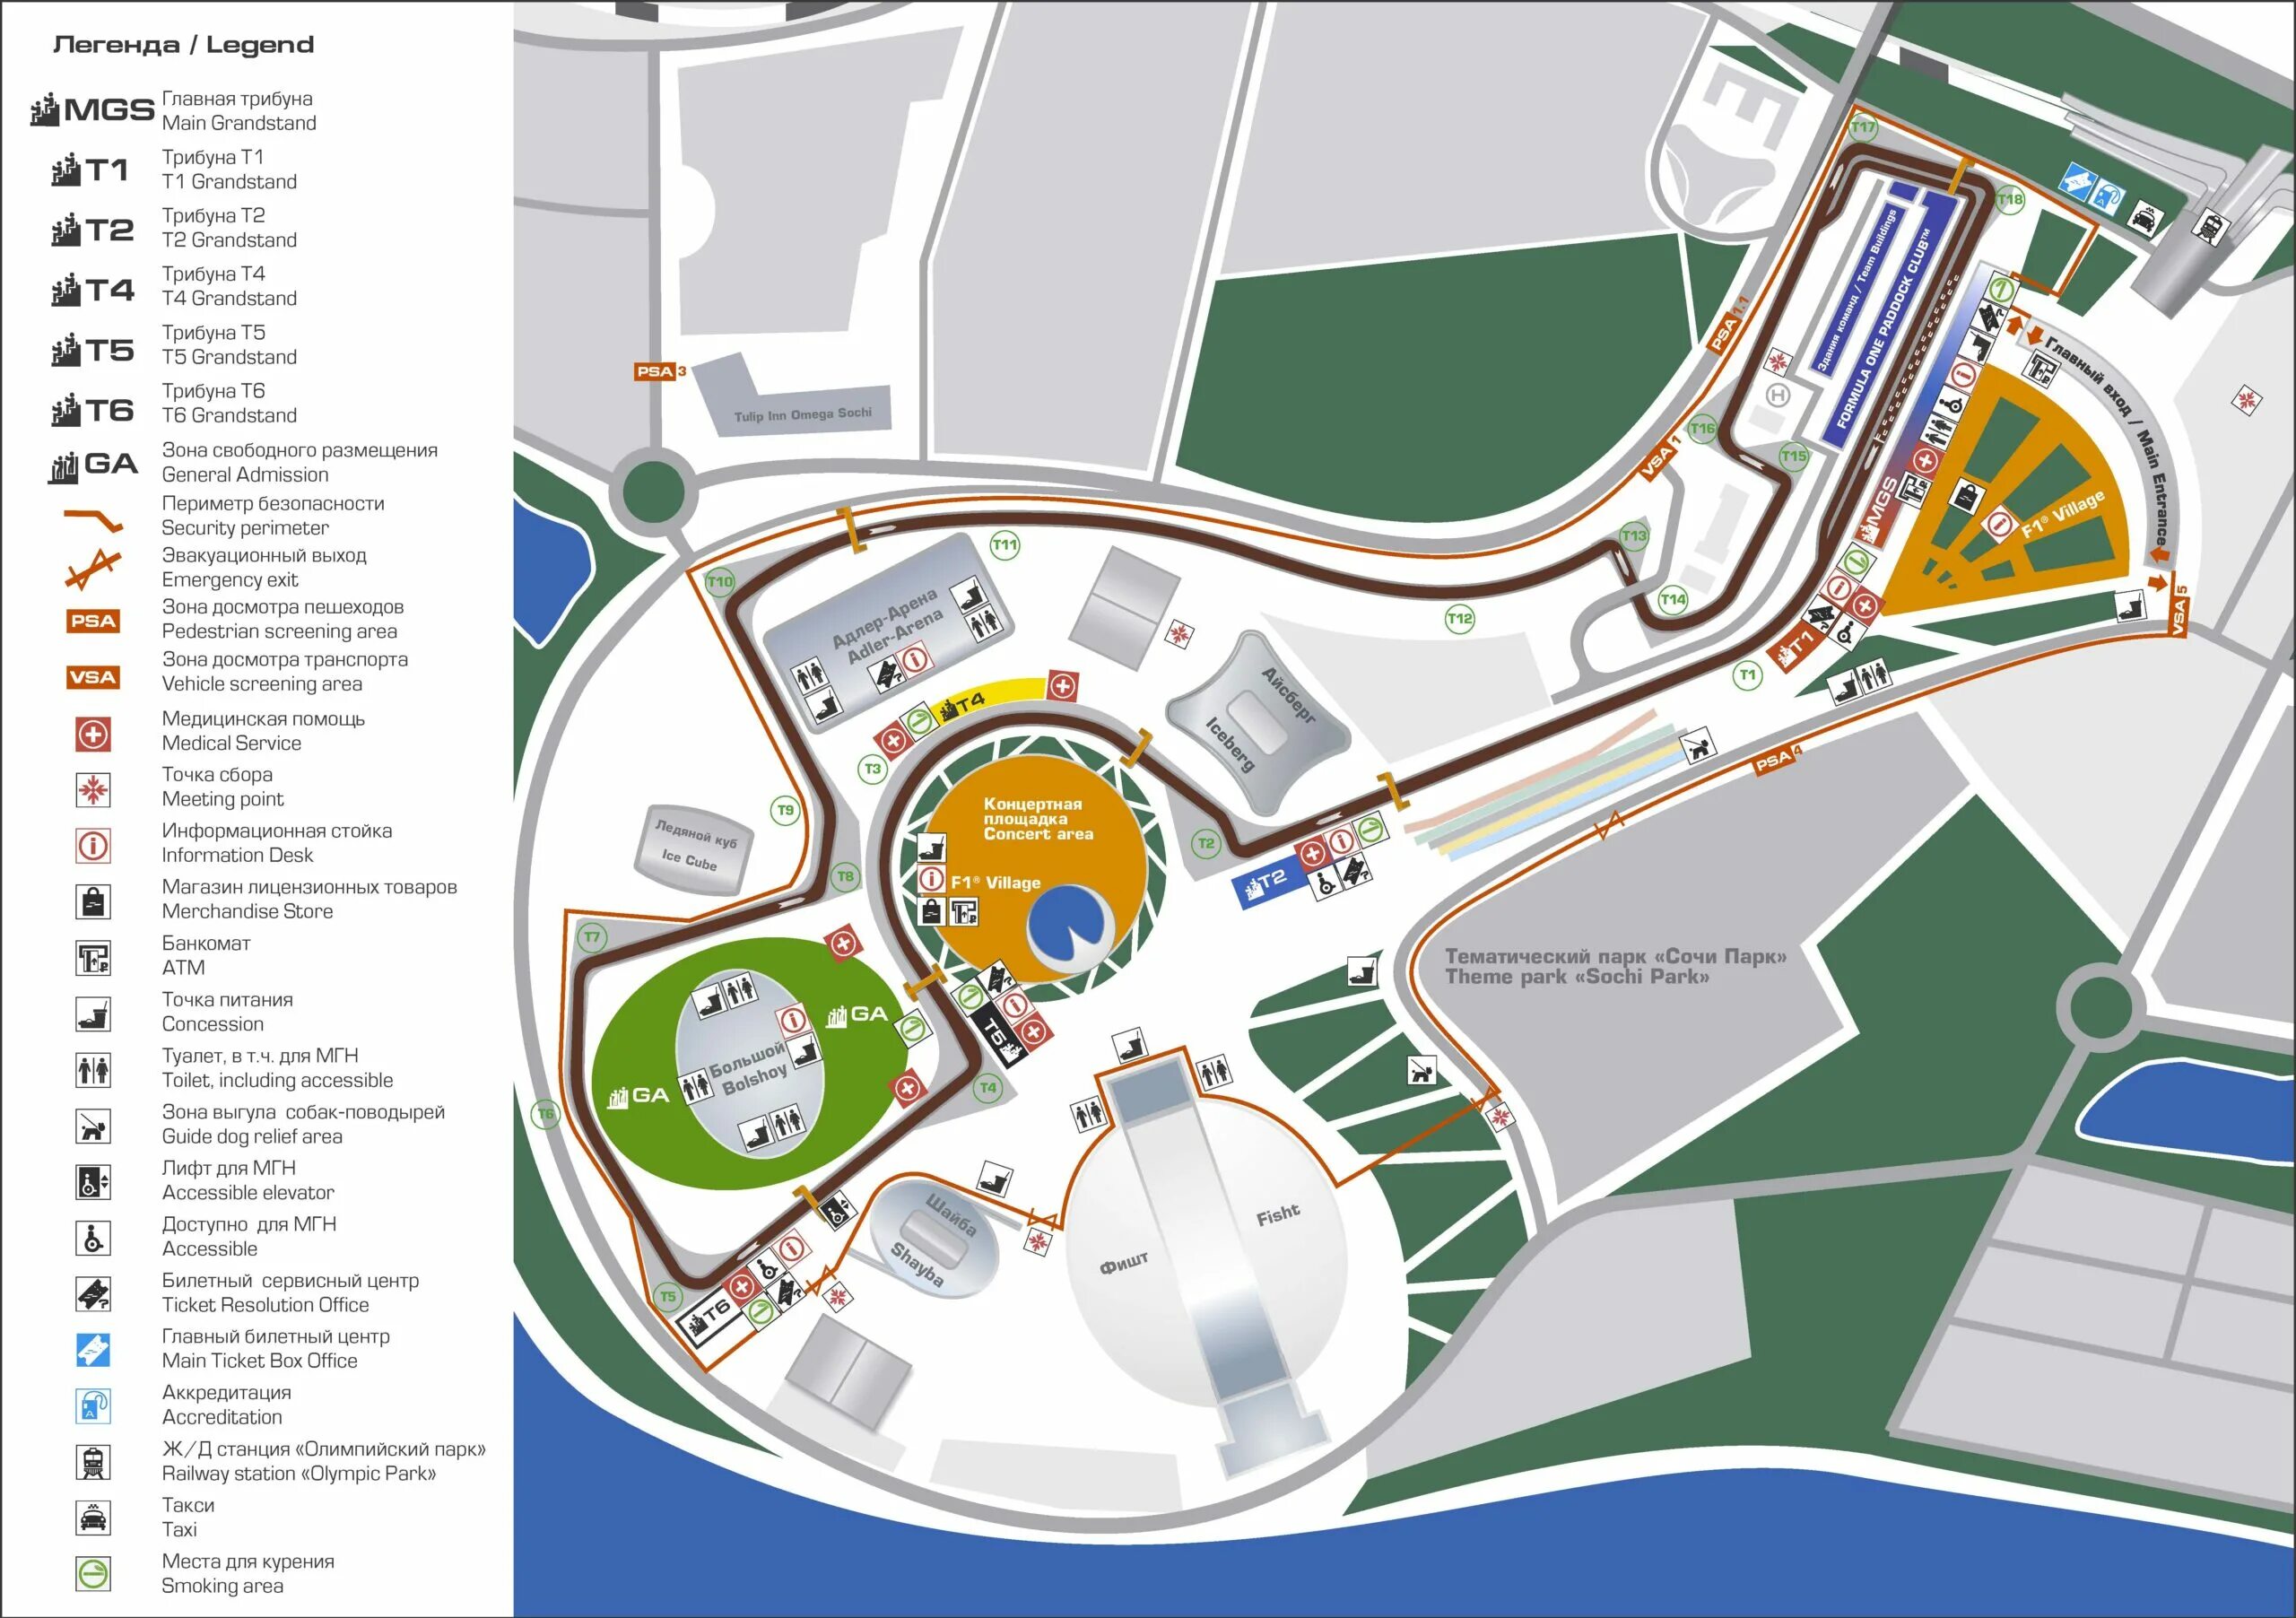 Работа олимпийского парка в сочи. Схема олимпийского парка. Карта схема олимпийского парка Сочи Адлер. Олимпийский парк Сочи 2022. Олимпийский парк Адлер схема парка.